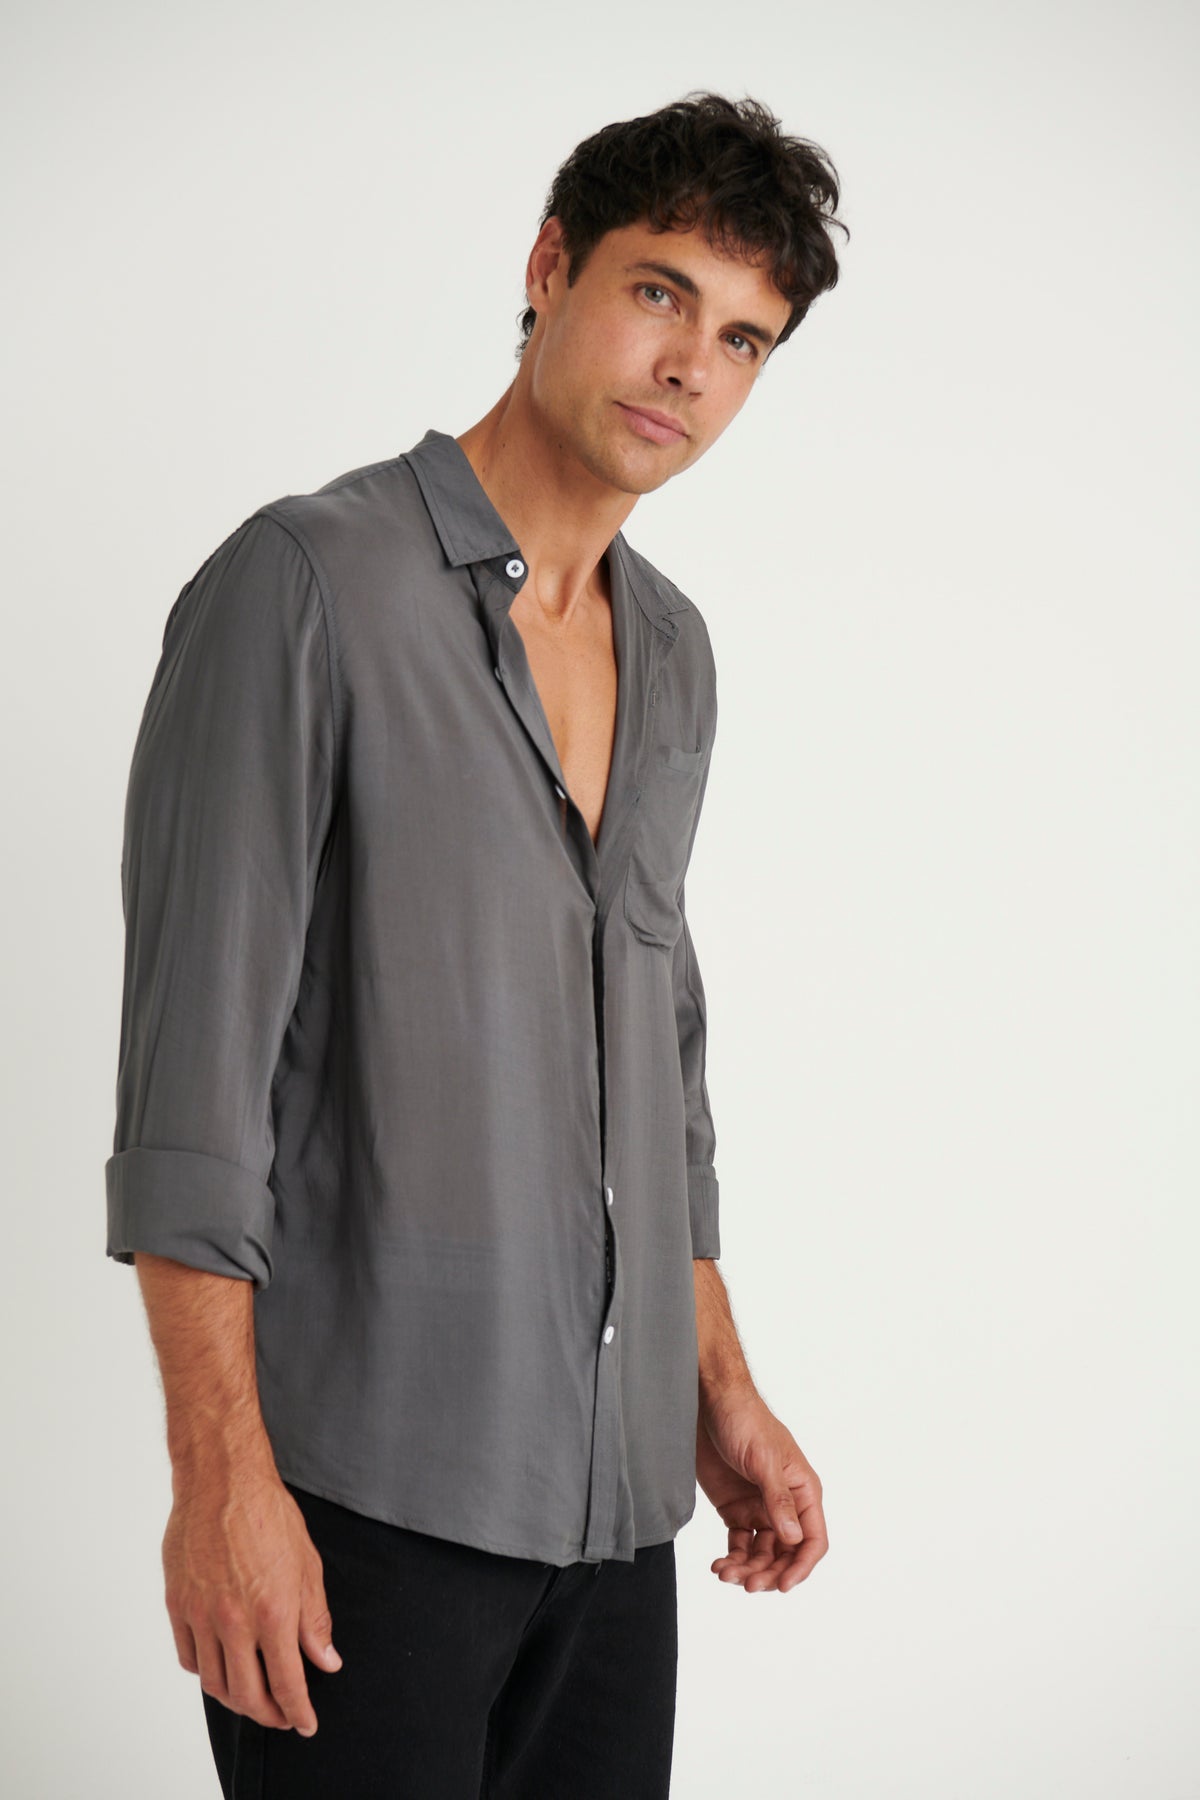 NTH Rayon Long Sleeve Shirt Slate - FINAL SALE